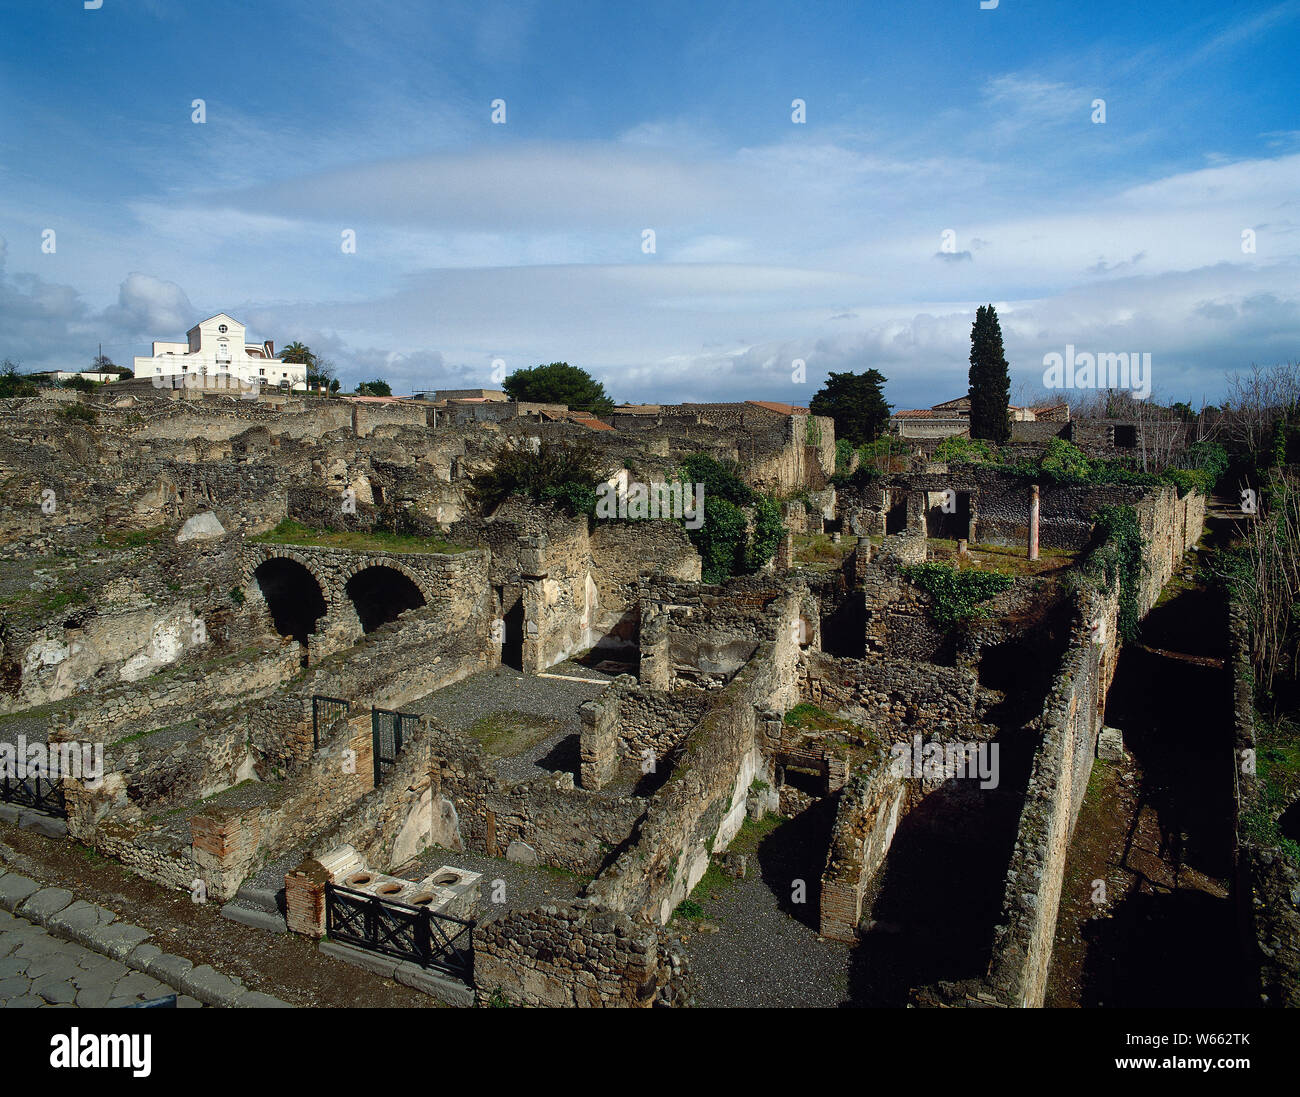 L'Italia. Ercolano. Antica città romana distrutta dall'eruzione del Vesuvio al 79 D.C. Vista panoramica. La Campania. Foto Stock